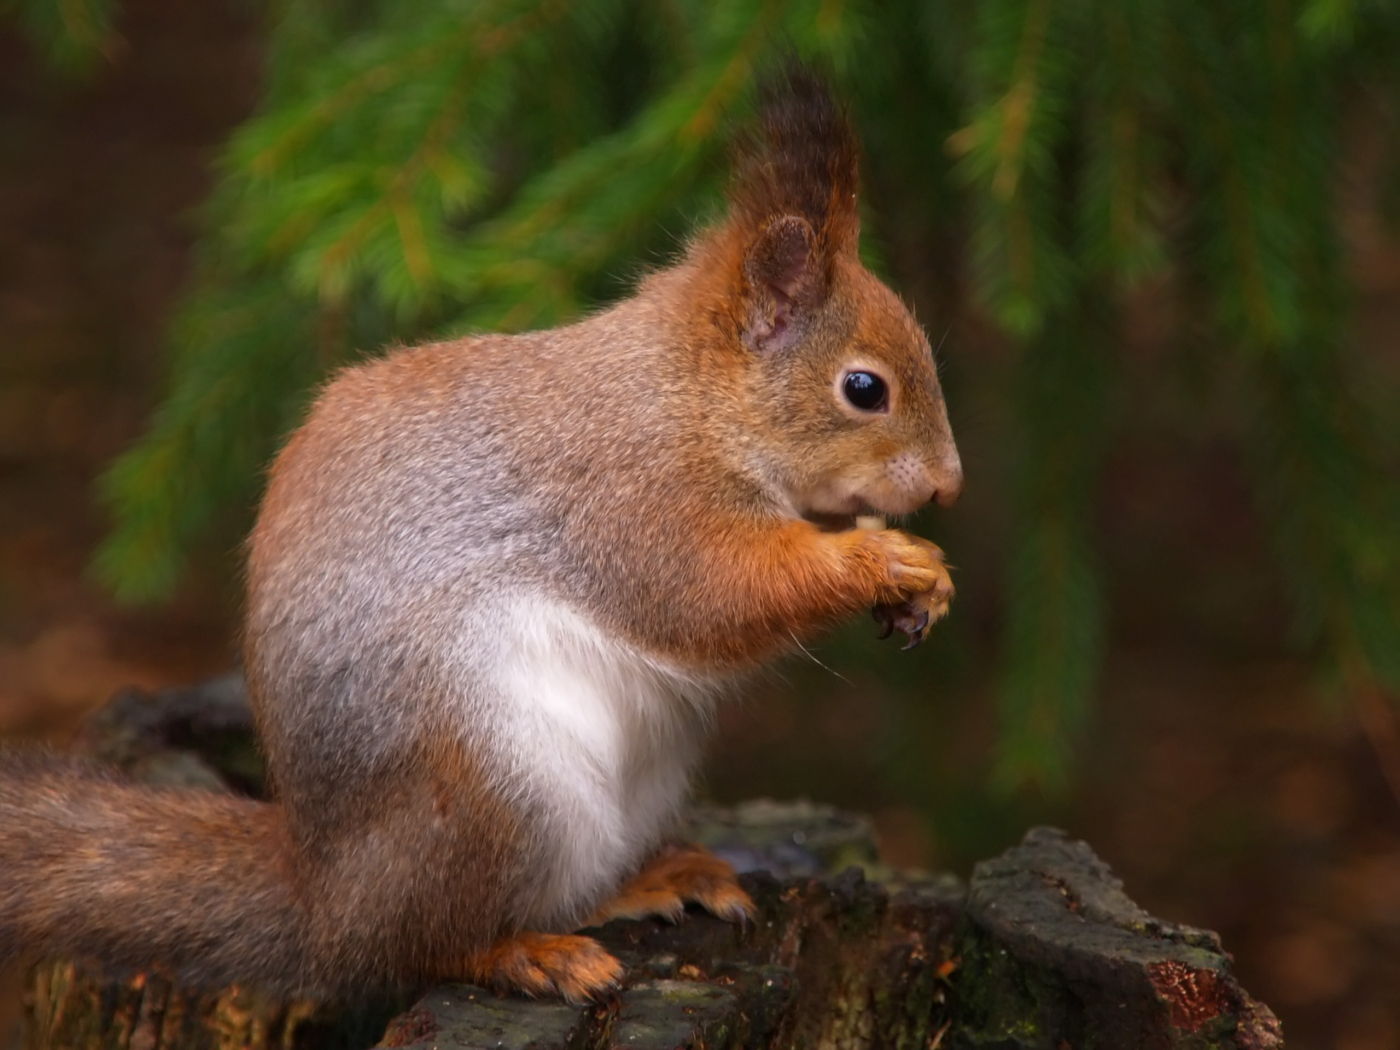 Squirrel in the spiring forrest